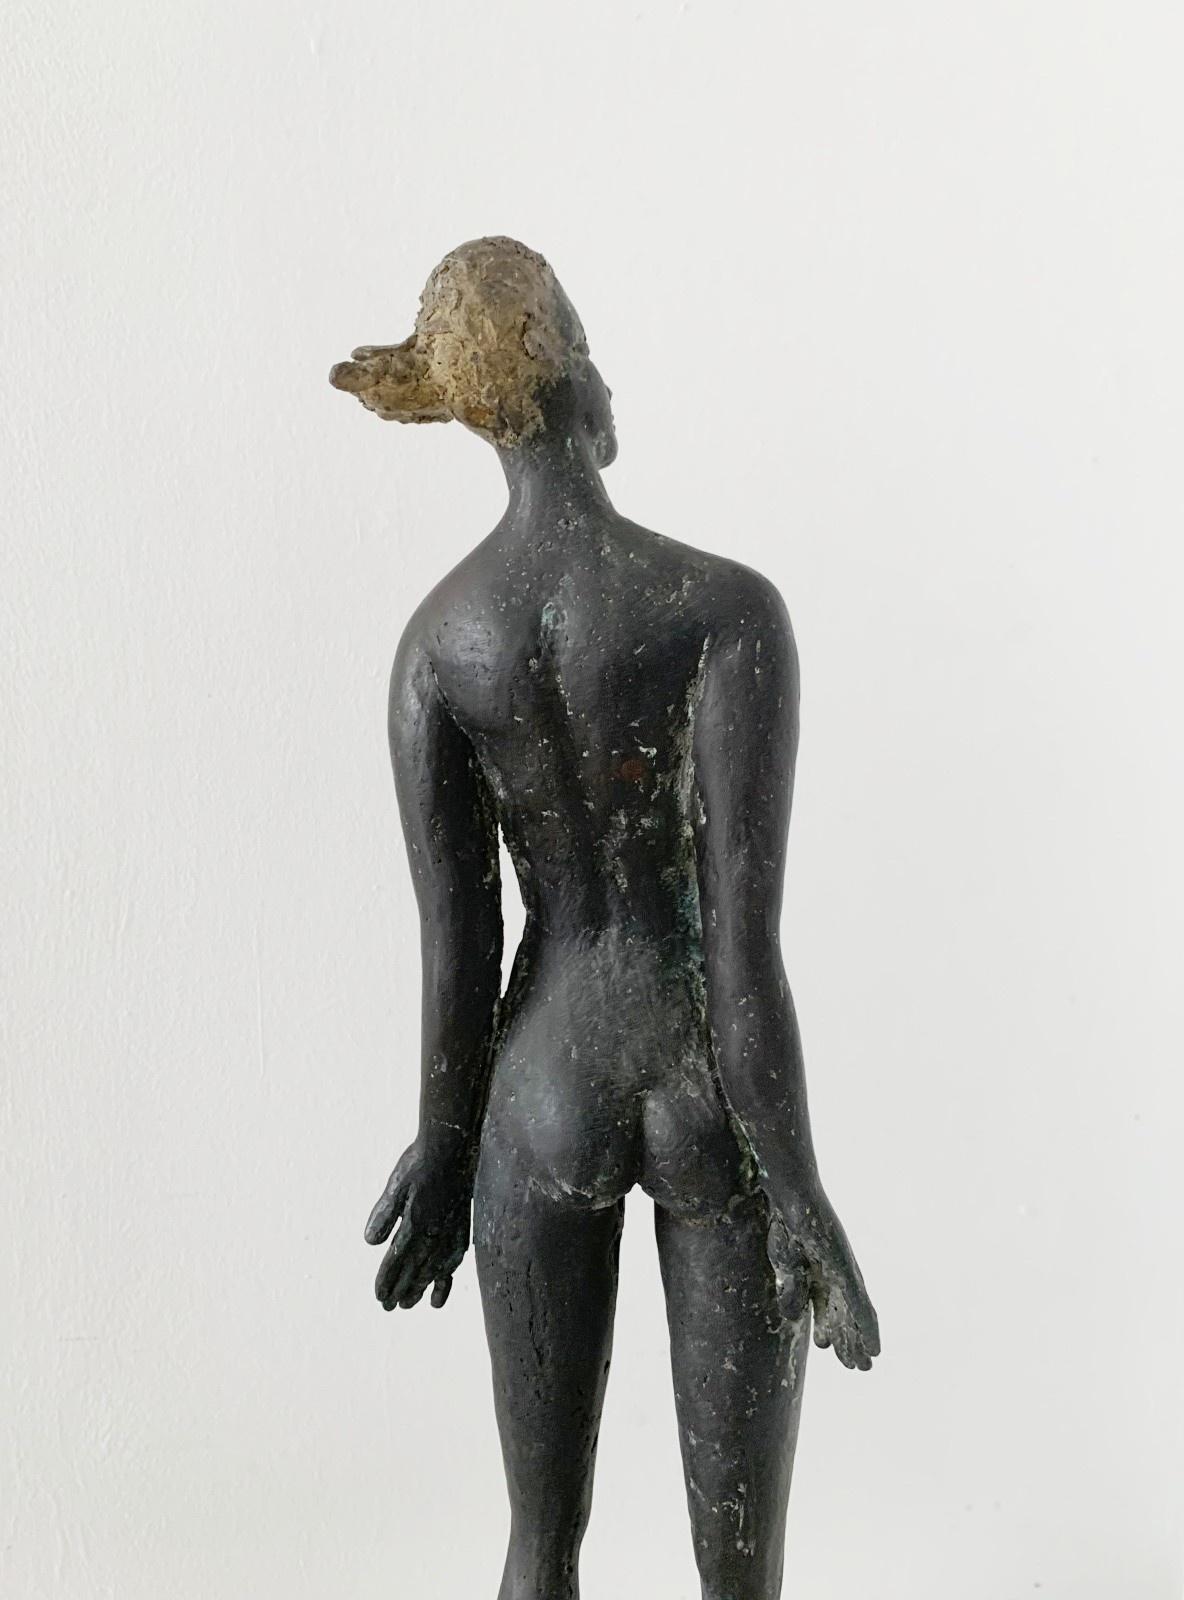 Sculpture figurative contemporaine en bronze représentant une femme debout, réalisée par l'artiste italien, le professeur Giuseppe del Debbio. La sculpture est signée sur la base. 

GIUSEPPE DEL DEBBIO ( 1950-2019)
Professeur à l'Académie des